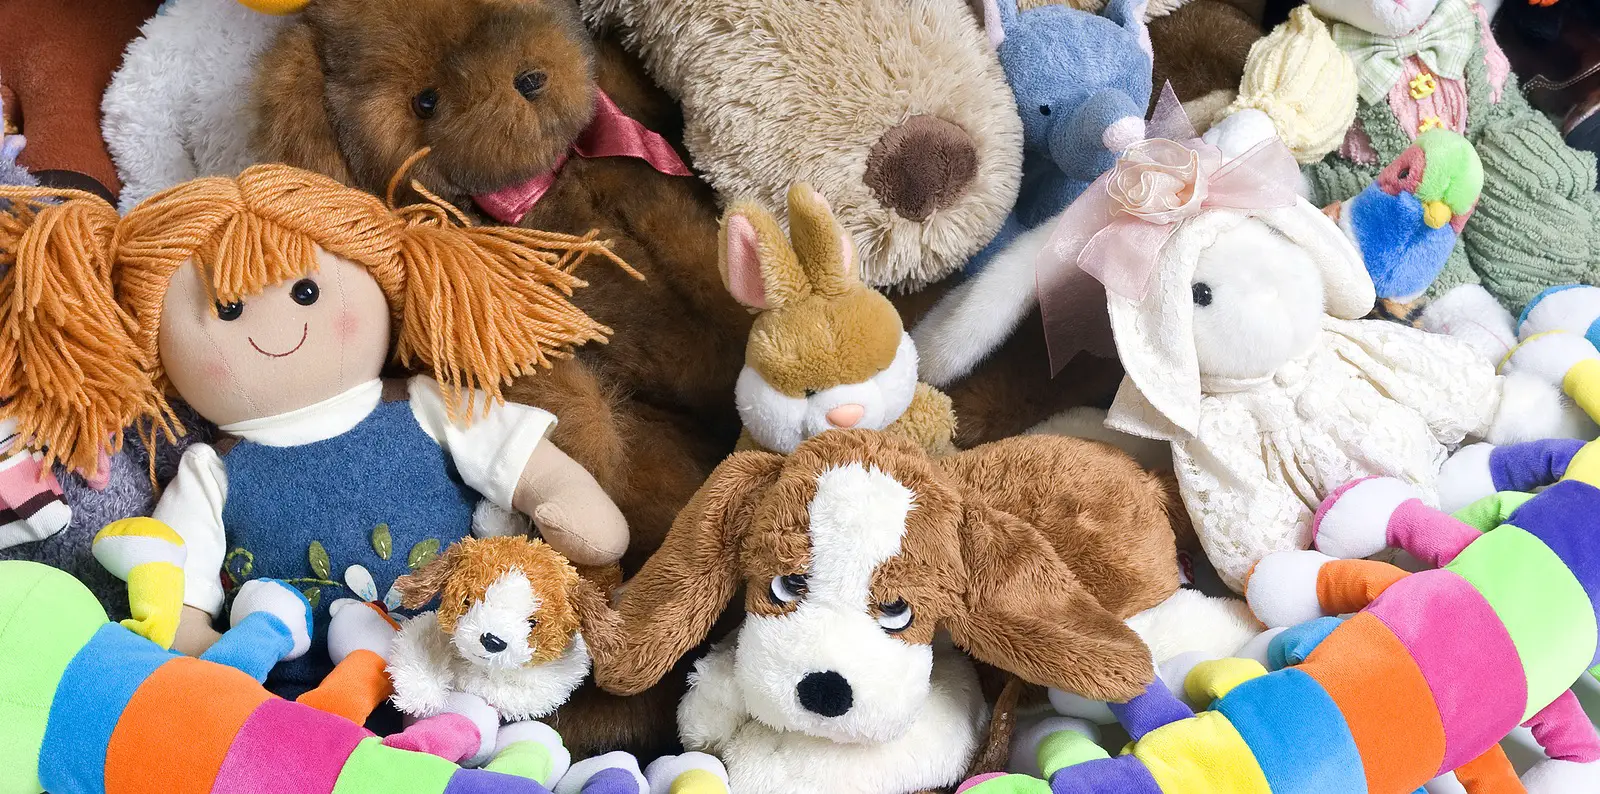 stuffed animals - plushies